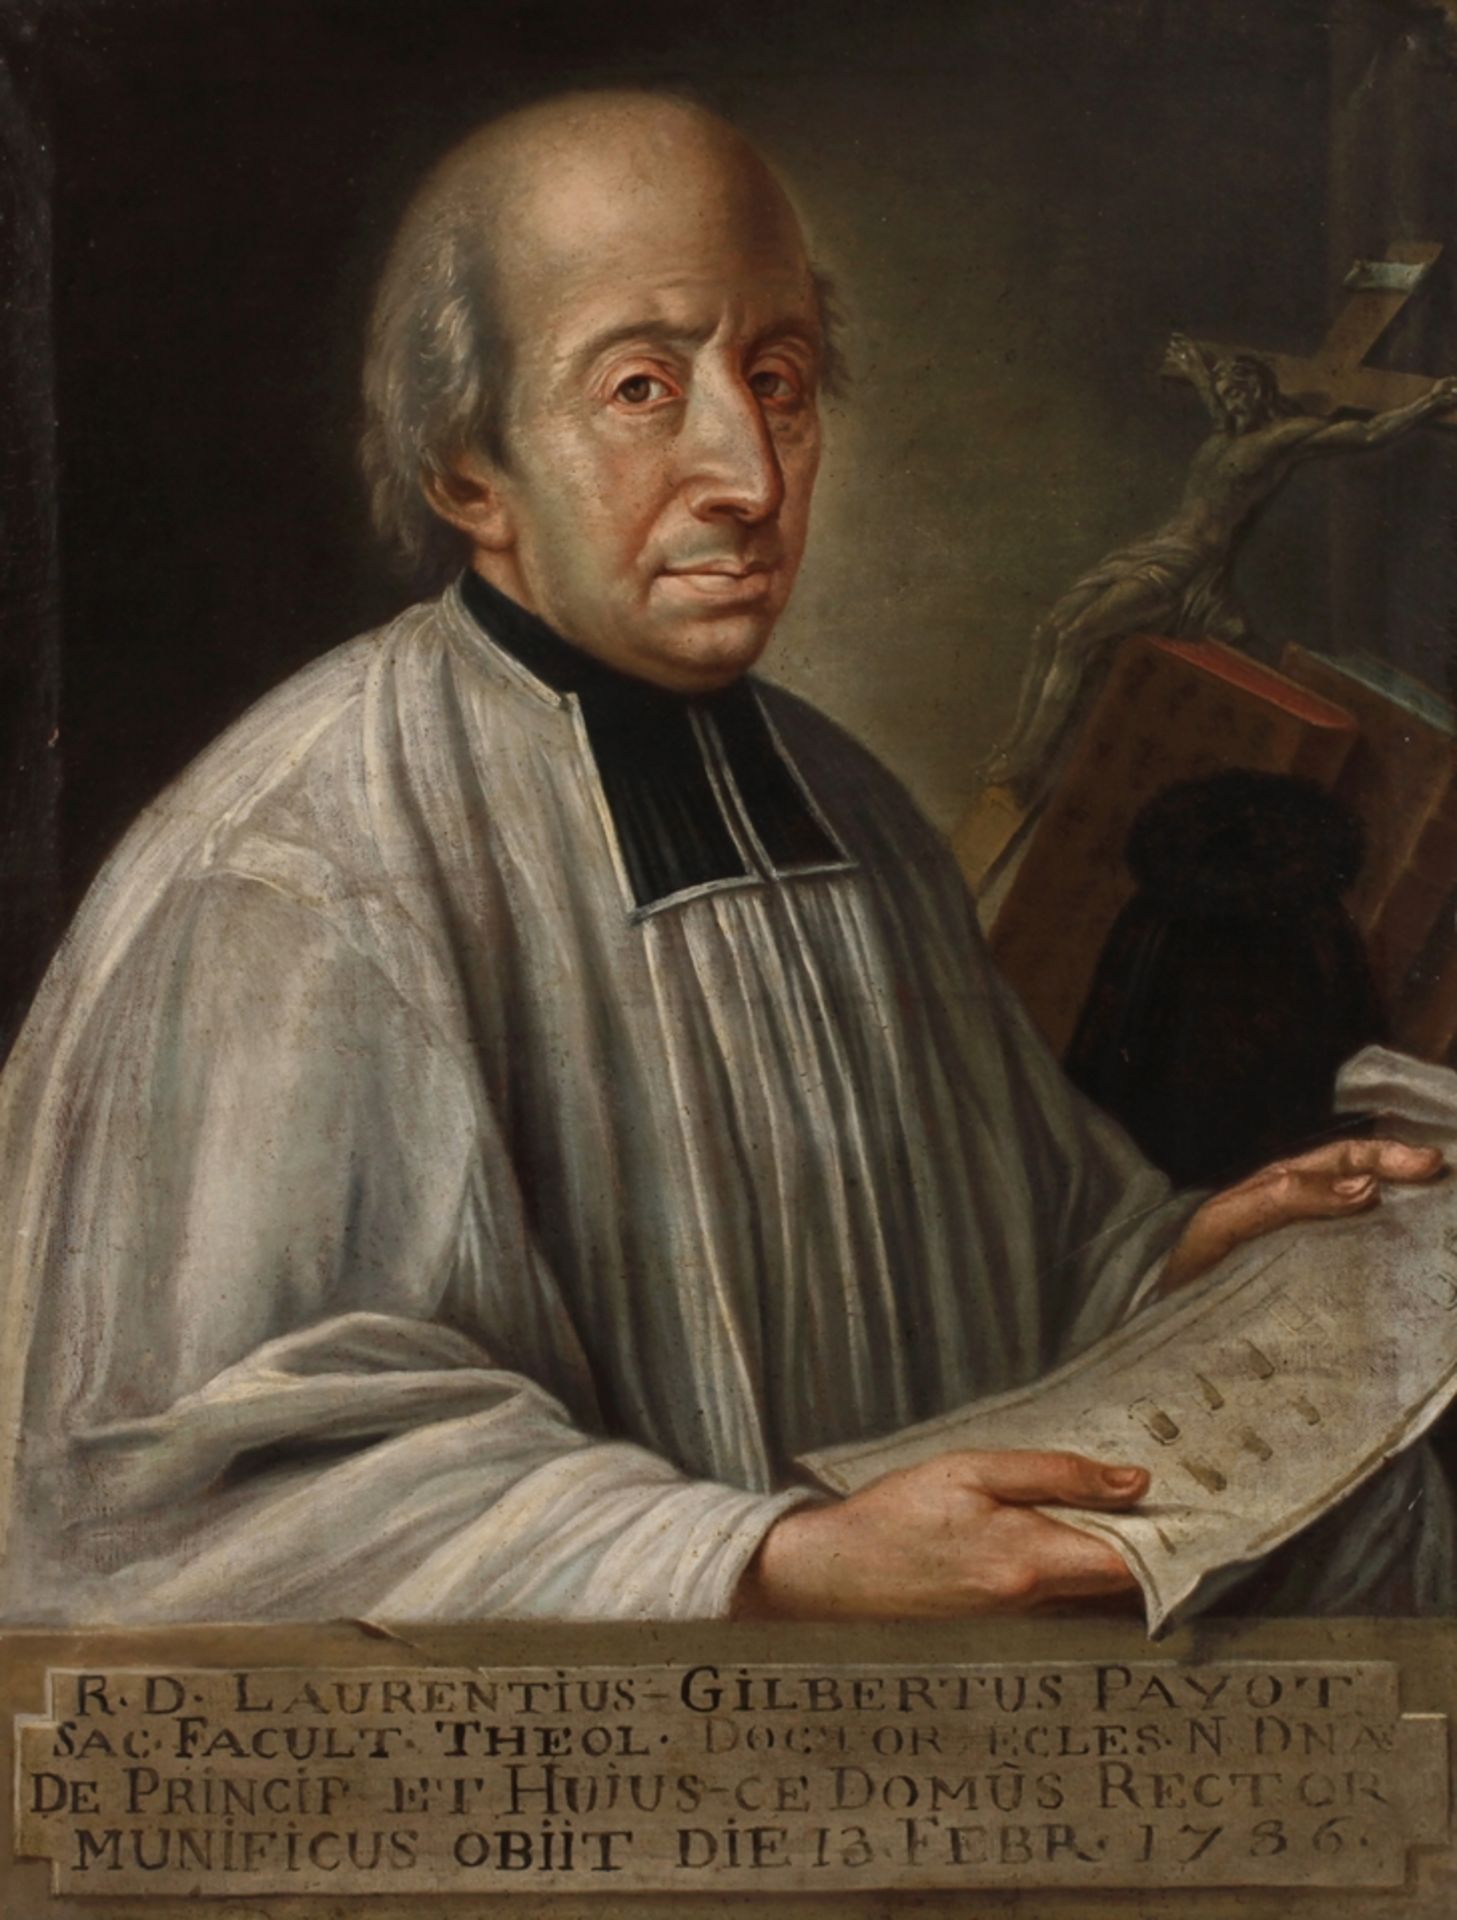 Devotional portrait of Dr. Laurentius Gilbertus Payot